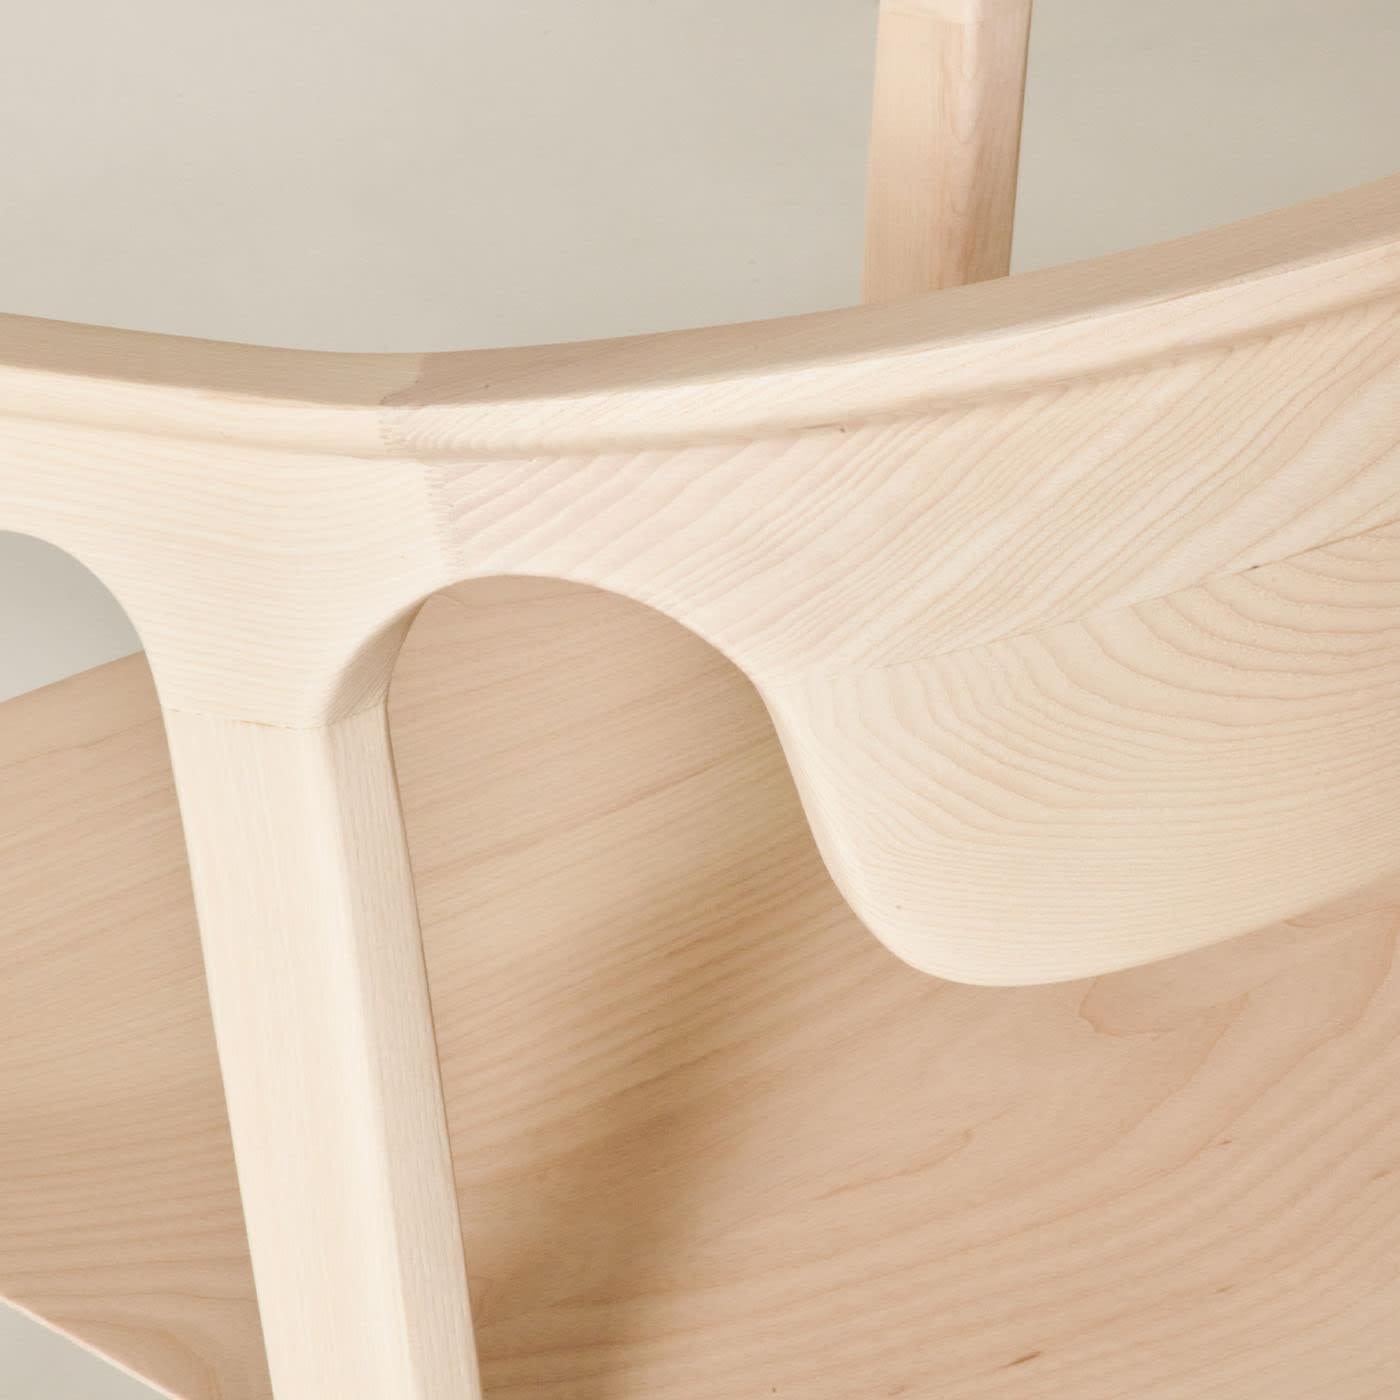 Duna aus der Collection 2023 für zeitgenössische Möbel ist das perfekte Gleichgewicht zwischen weichen und linearen Formen. Sein Design ist das Ergebnis einer sorgfältigen formalen Studie mit dem Ziel, ein ätherisches Spiel von Körpern und